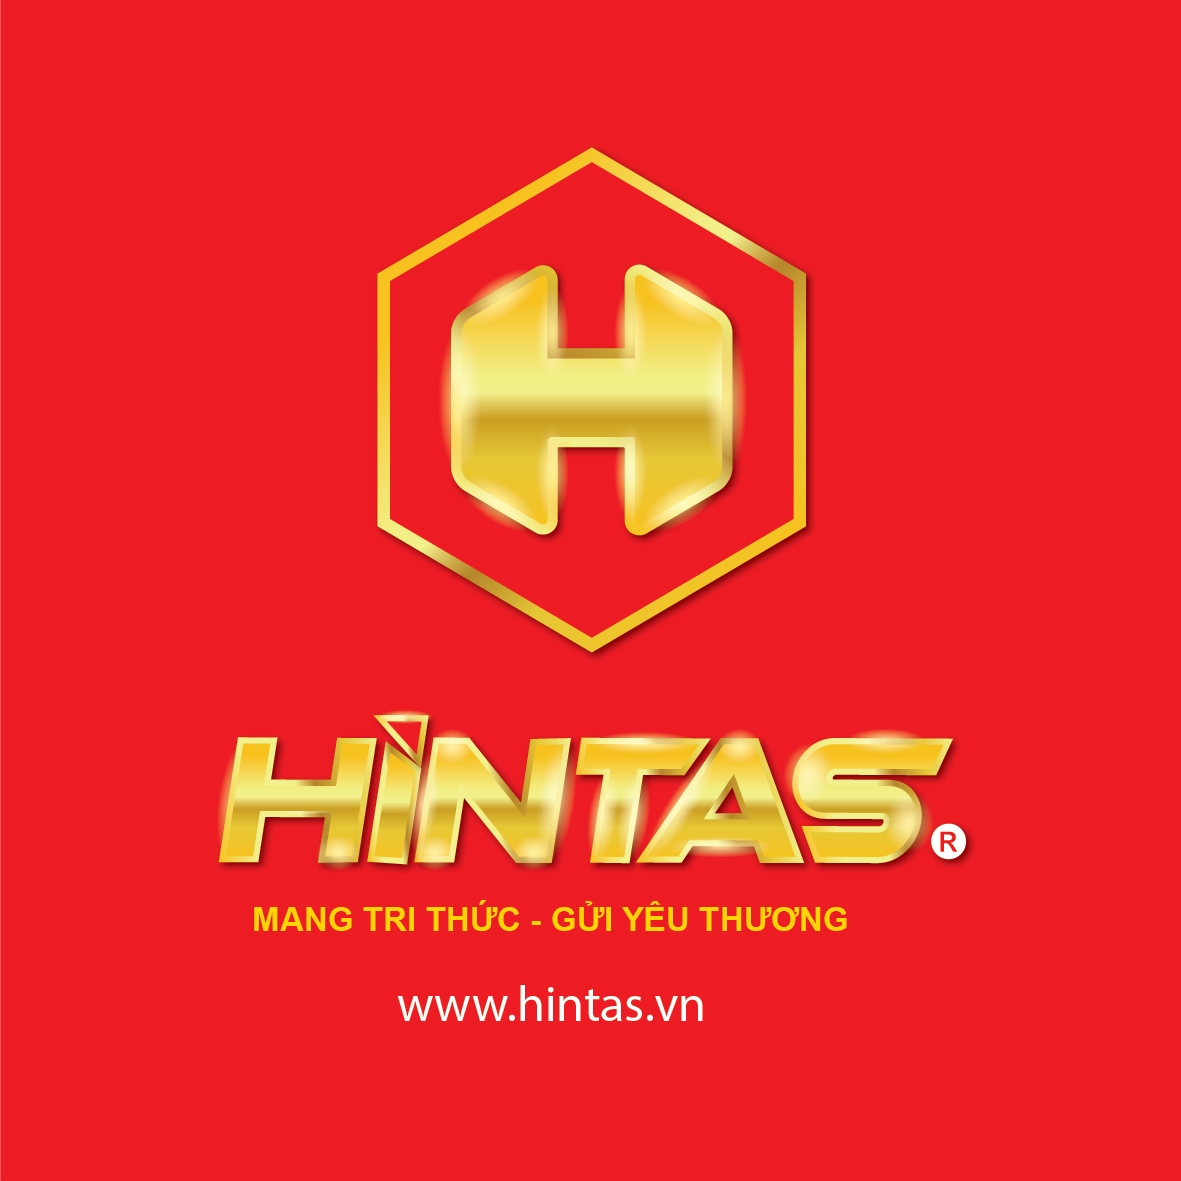 HINTAS Official